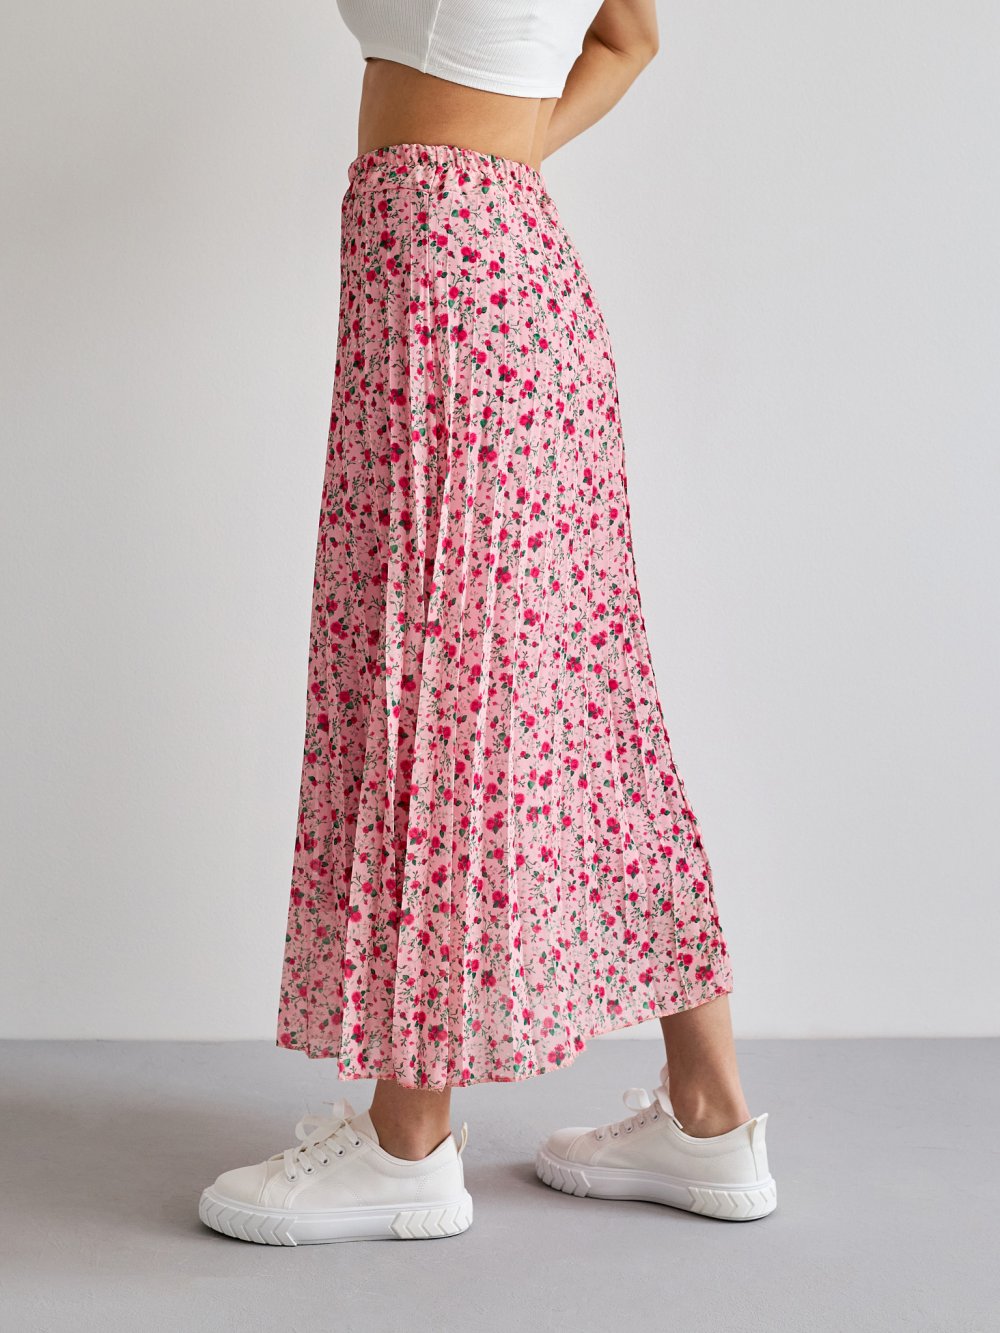 Růžová květovaná sukně Leine